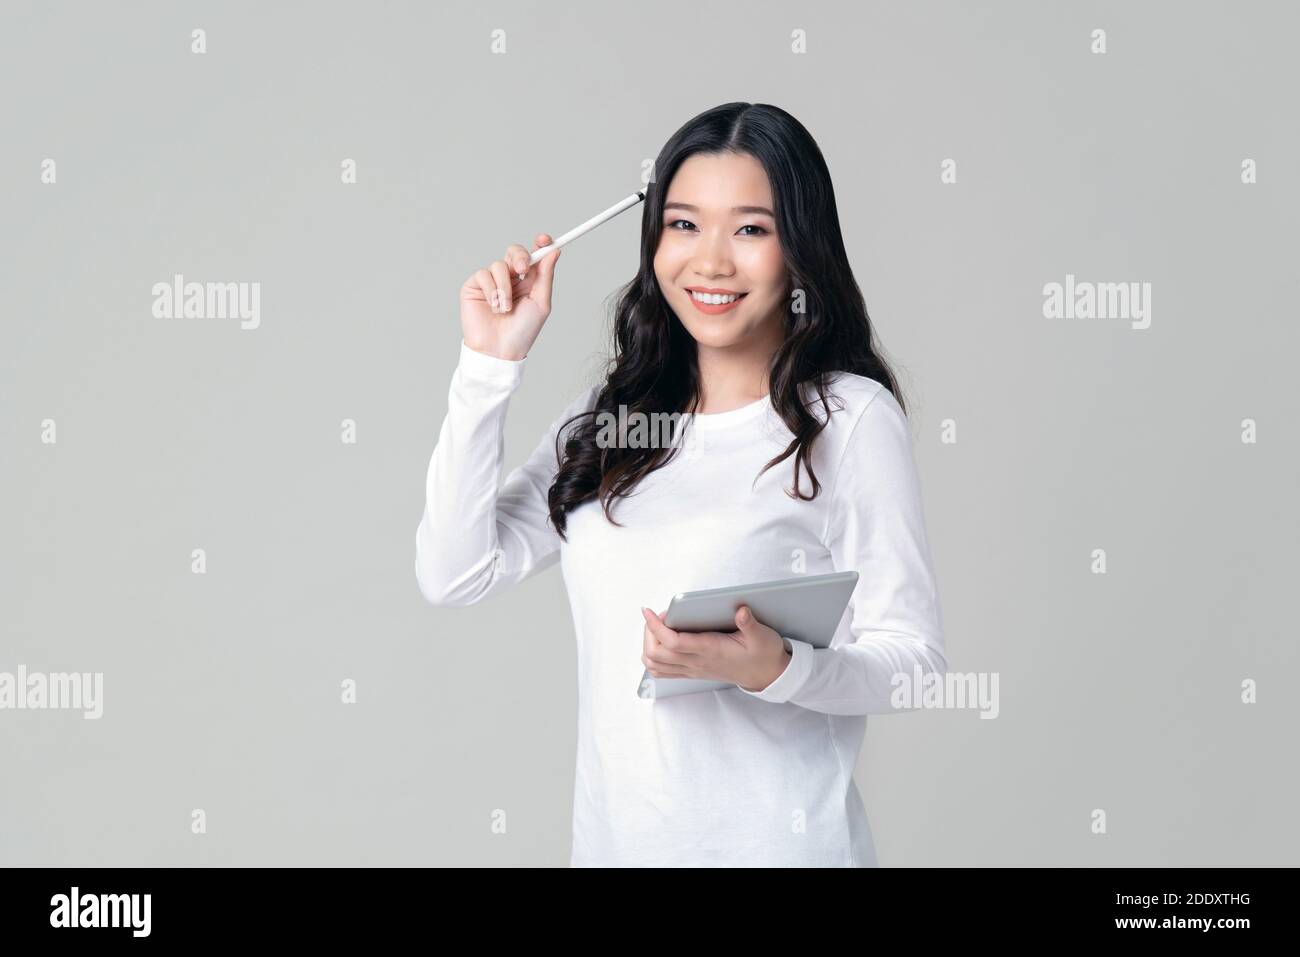 Lächelnde asiatische Frau in weißen Langarm-T-Shirt hält Stylus-Stift und Tablet in denken Geste isoliert auf hellgrauem Hintergrund. Stockfoto